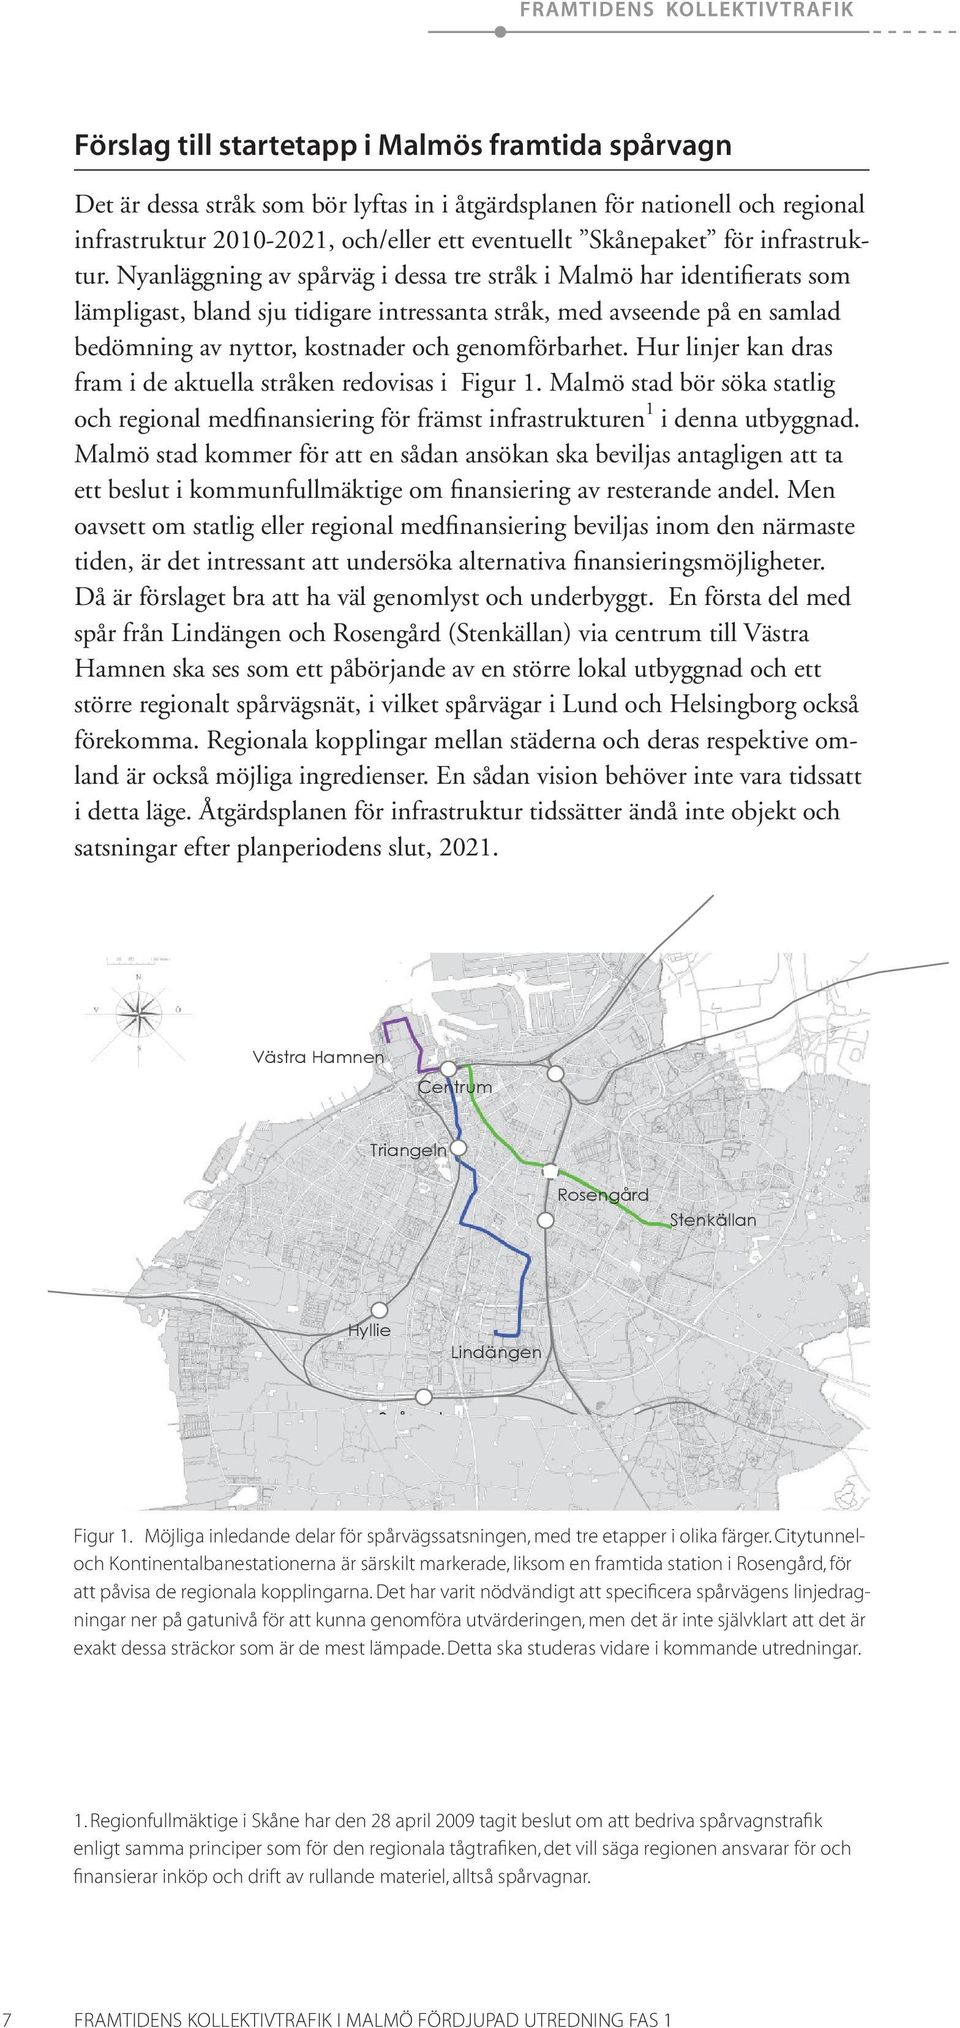 Nyanläggning av spårväg i dessa tre stråk i Malmö har identifierats som lämpligast, bland sju tidigare intressanta stråk, med avseende på en samlad bedömning av nyttor, kostnader och genomförbarhet.